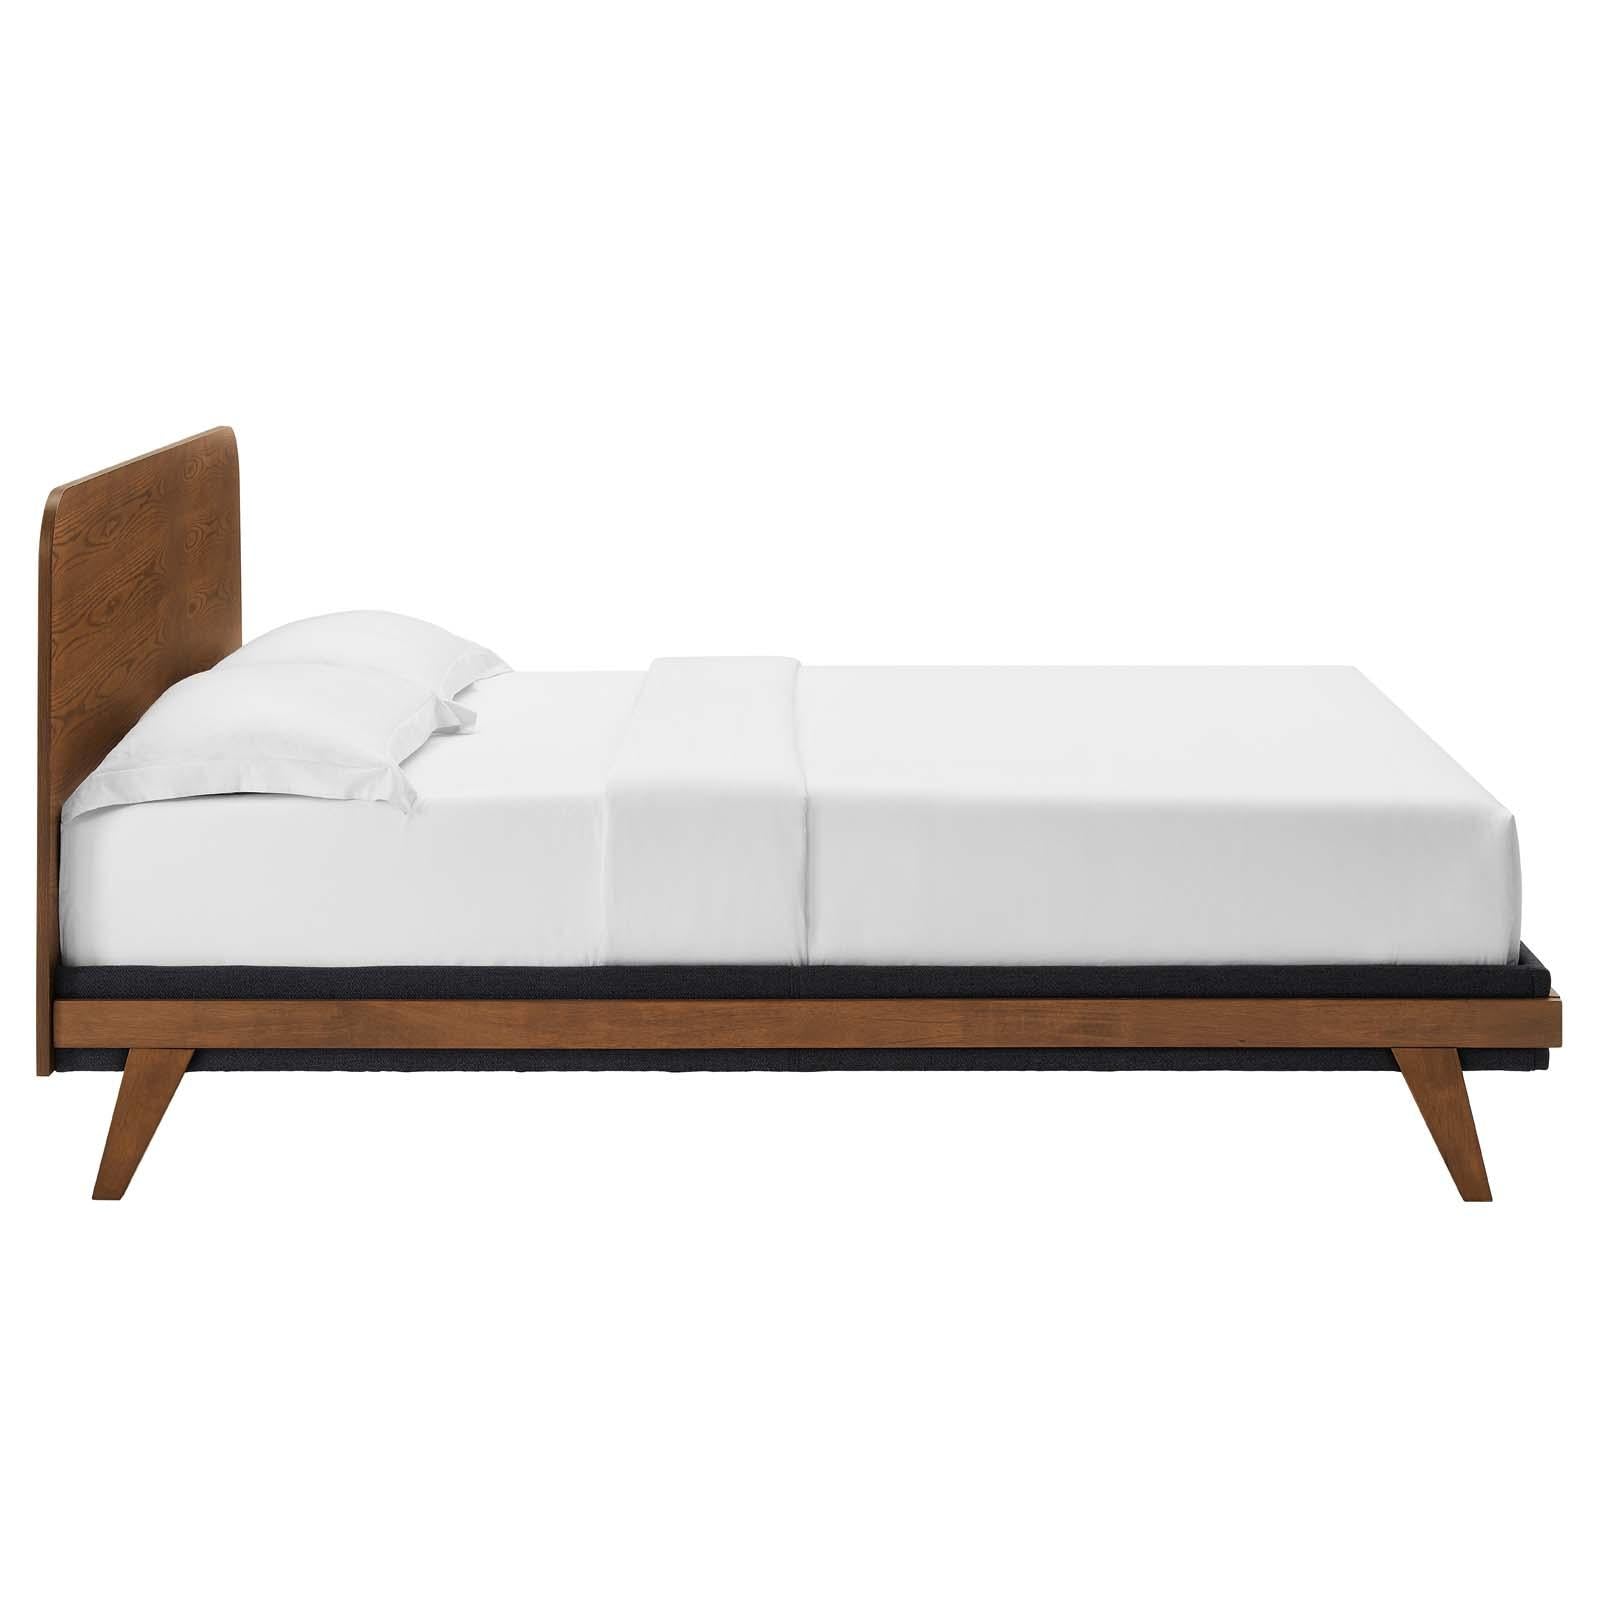 Modway Furniture Modern Dylan 4 Piece Bedroom Set - MOD-6956